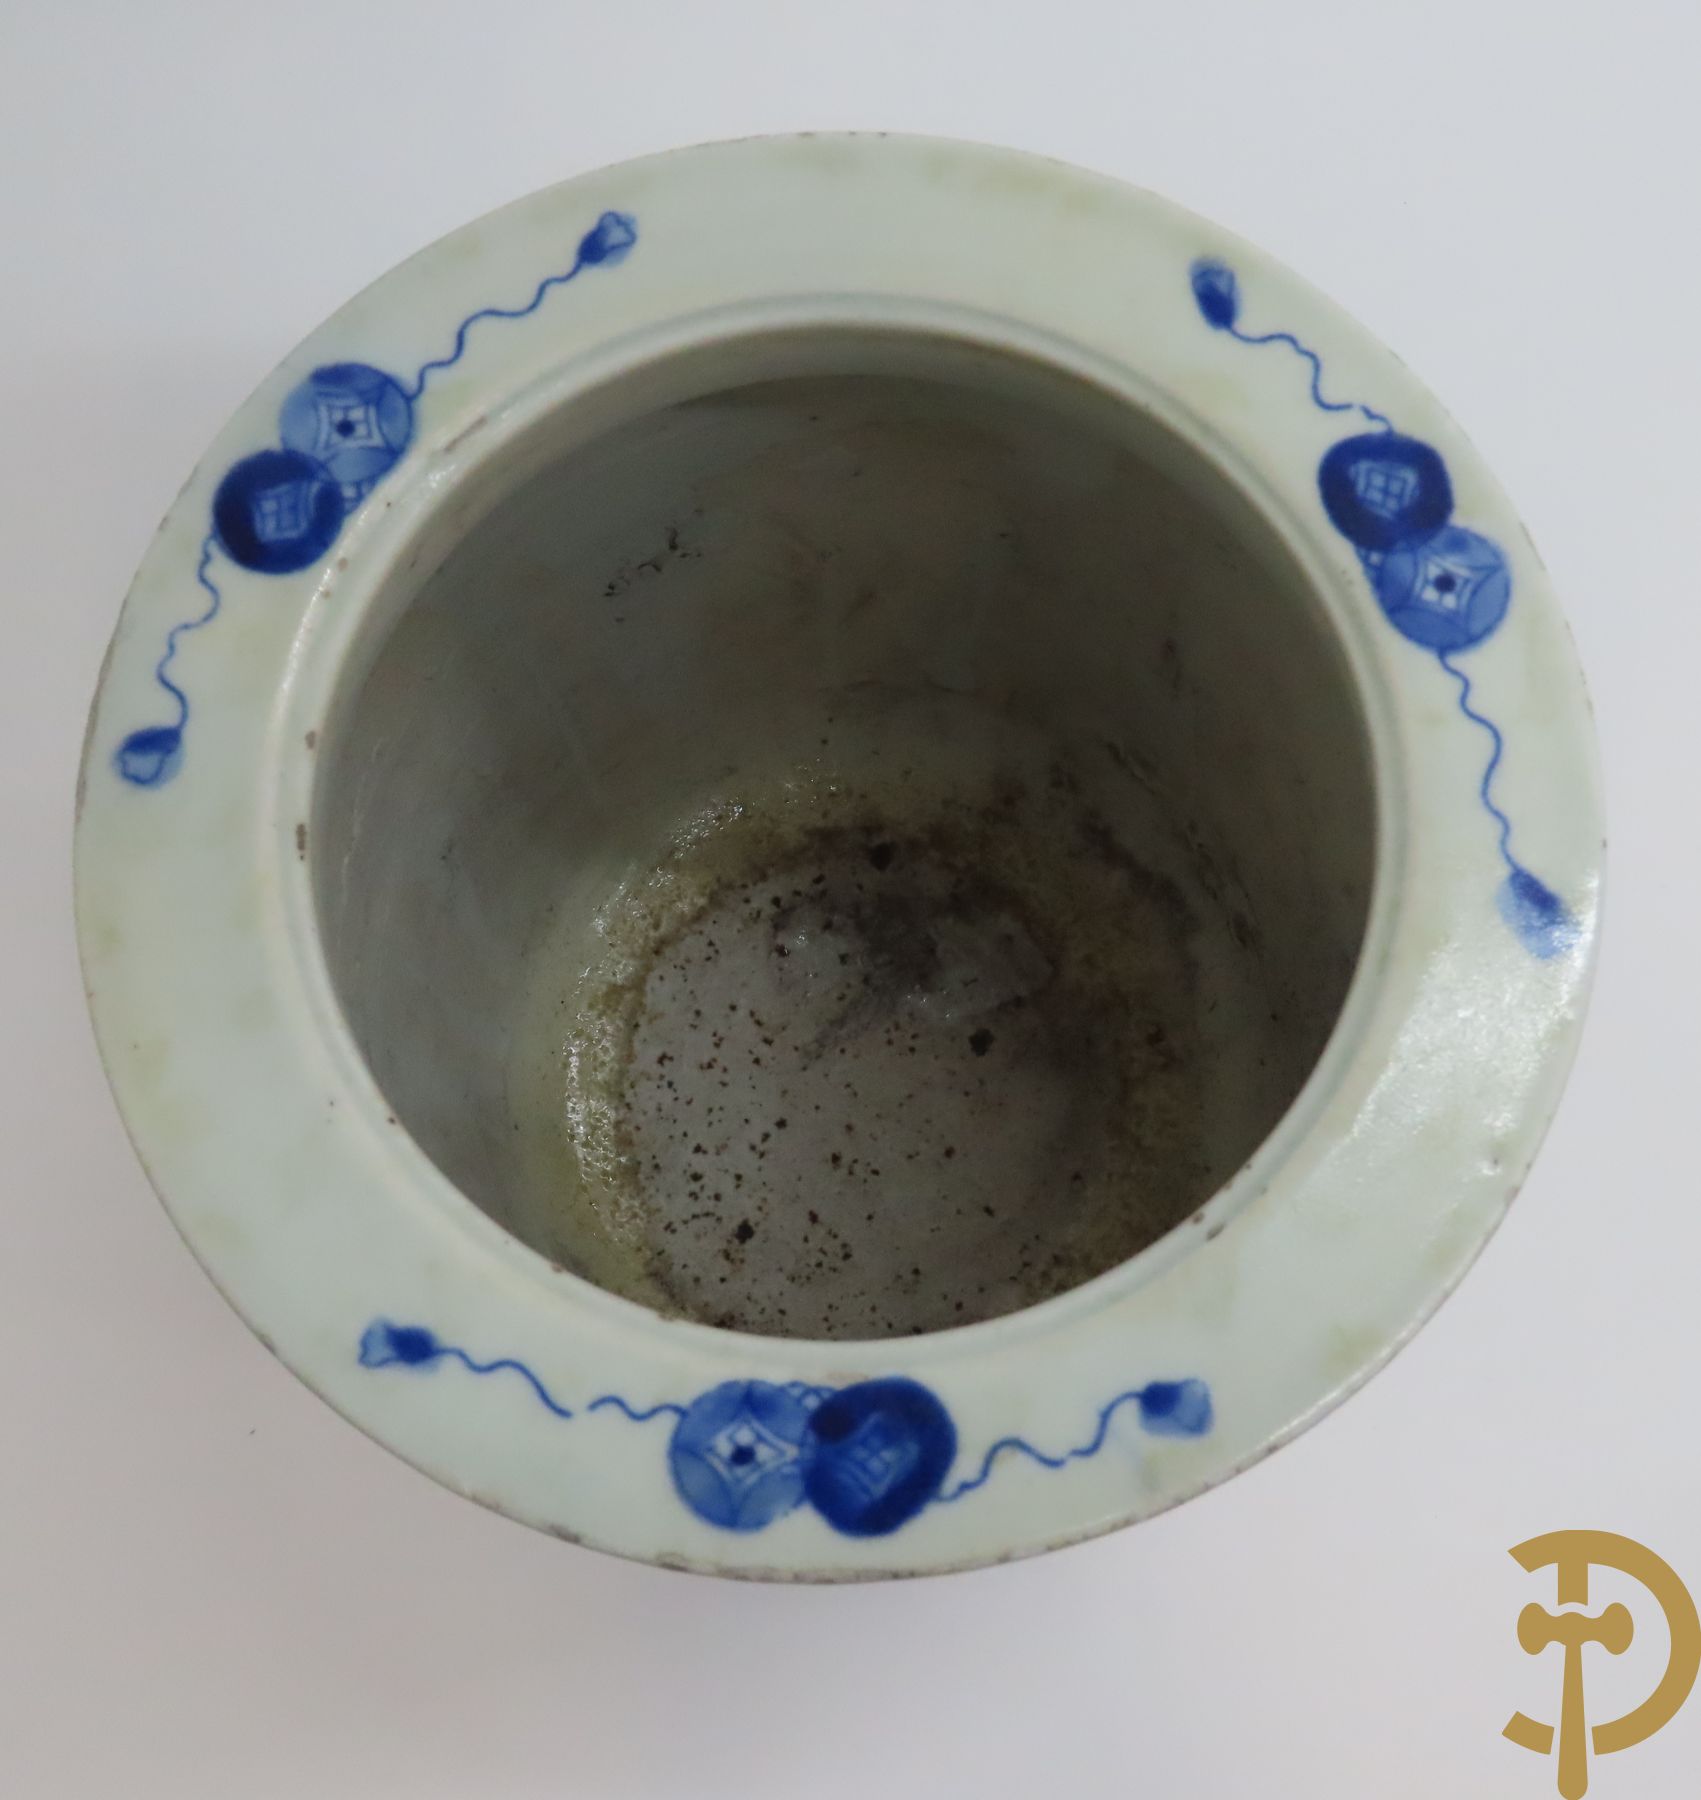 Porseleinen Aziatische wierookbrander met landschapsdecor + Aziatische vaas in blauw/wit porselein met natuurtaferelen van fauna en flora